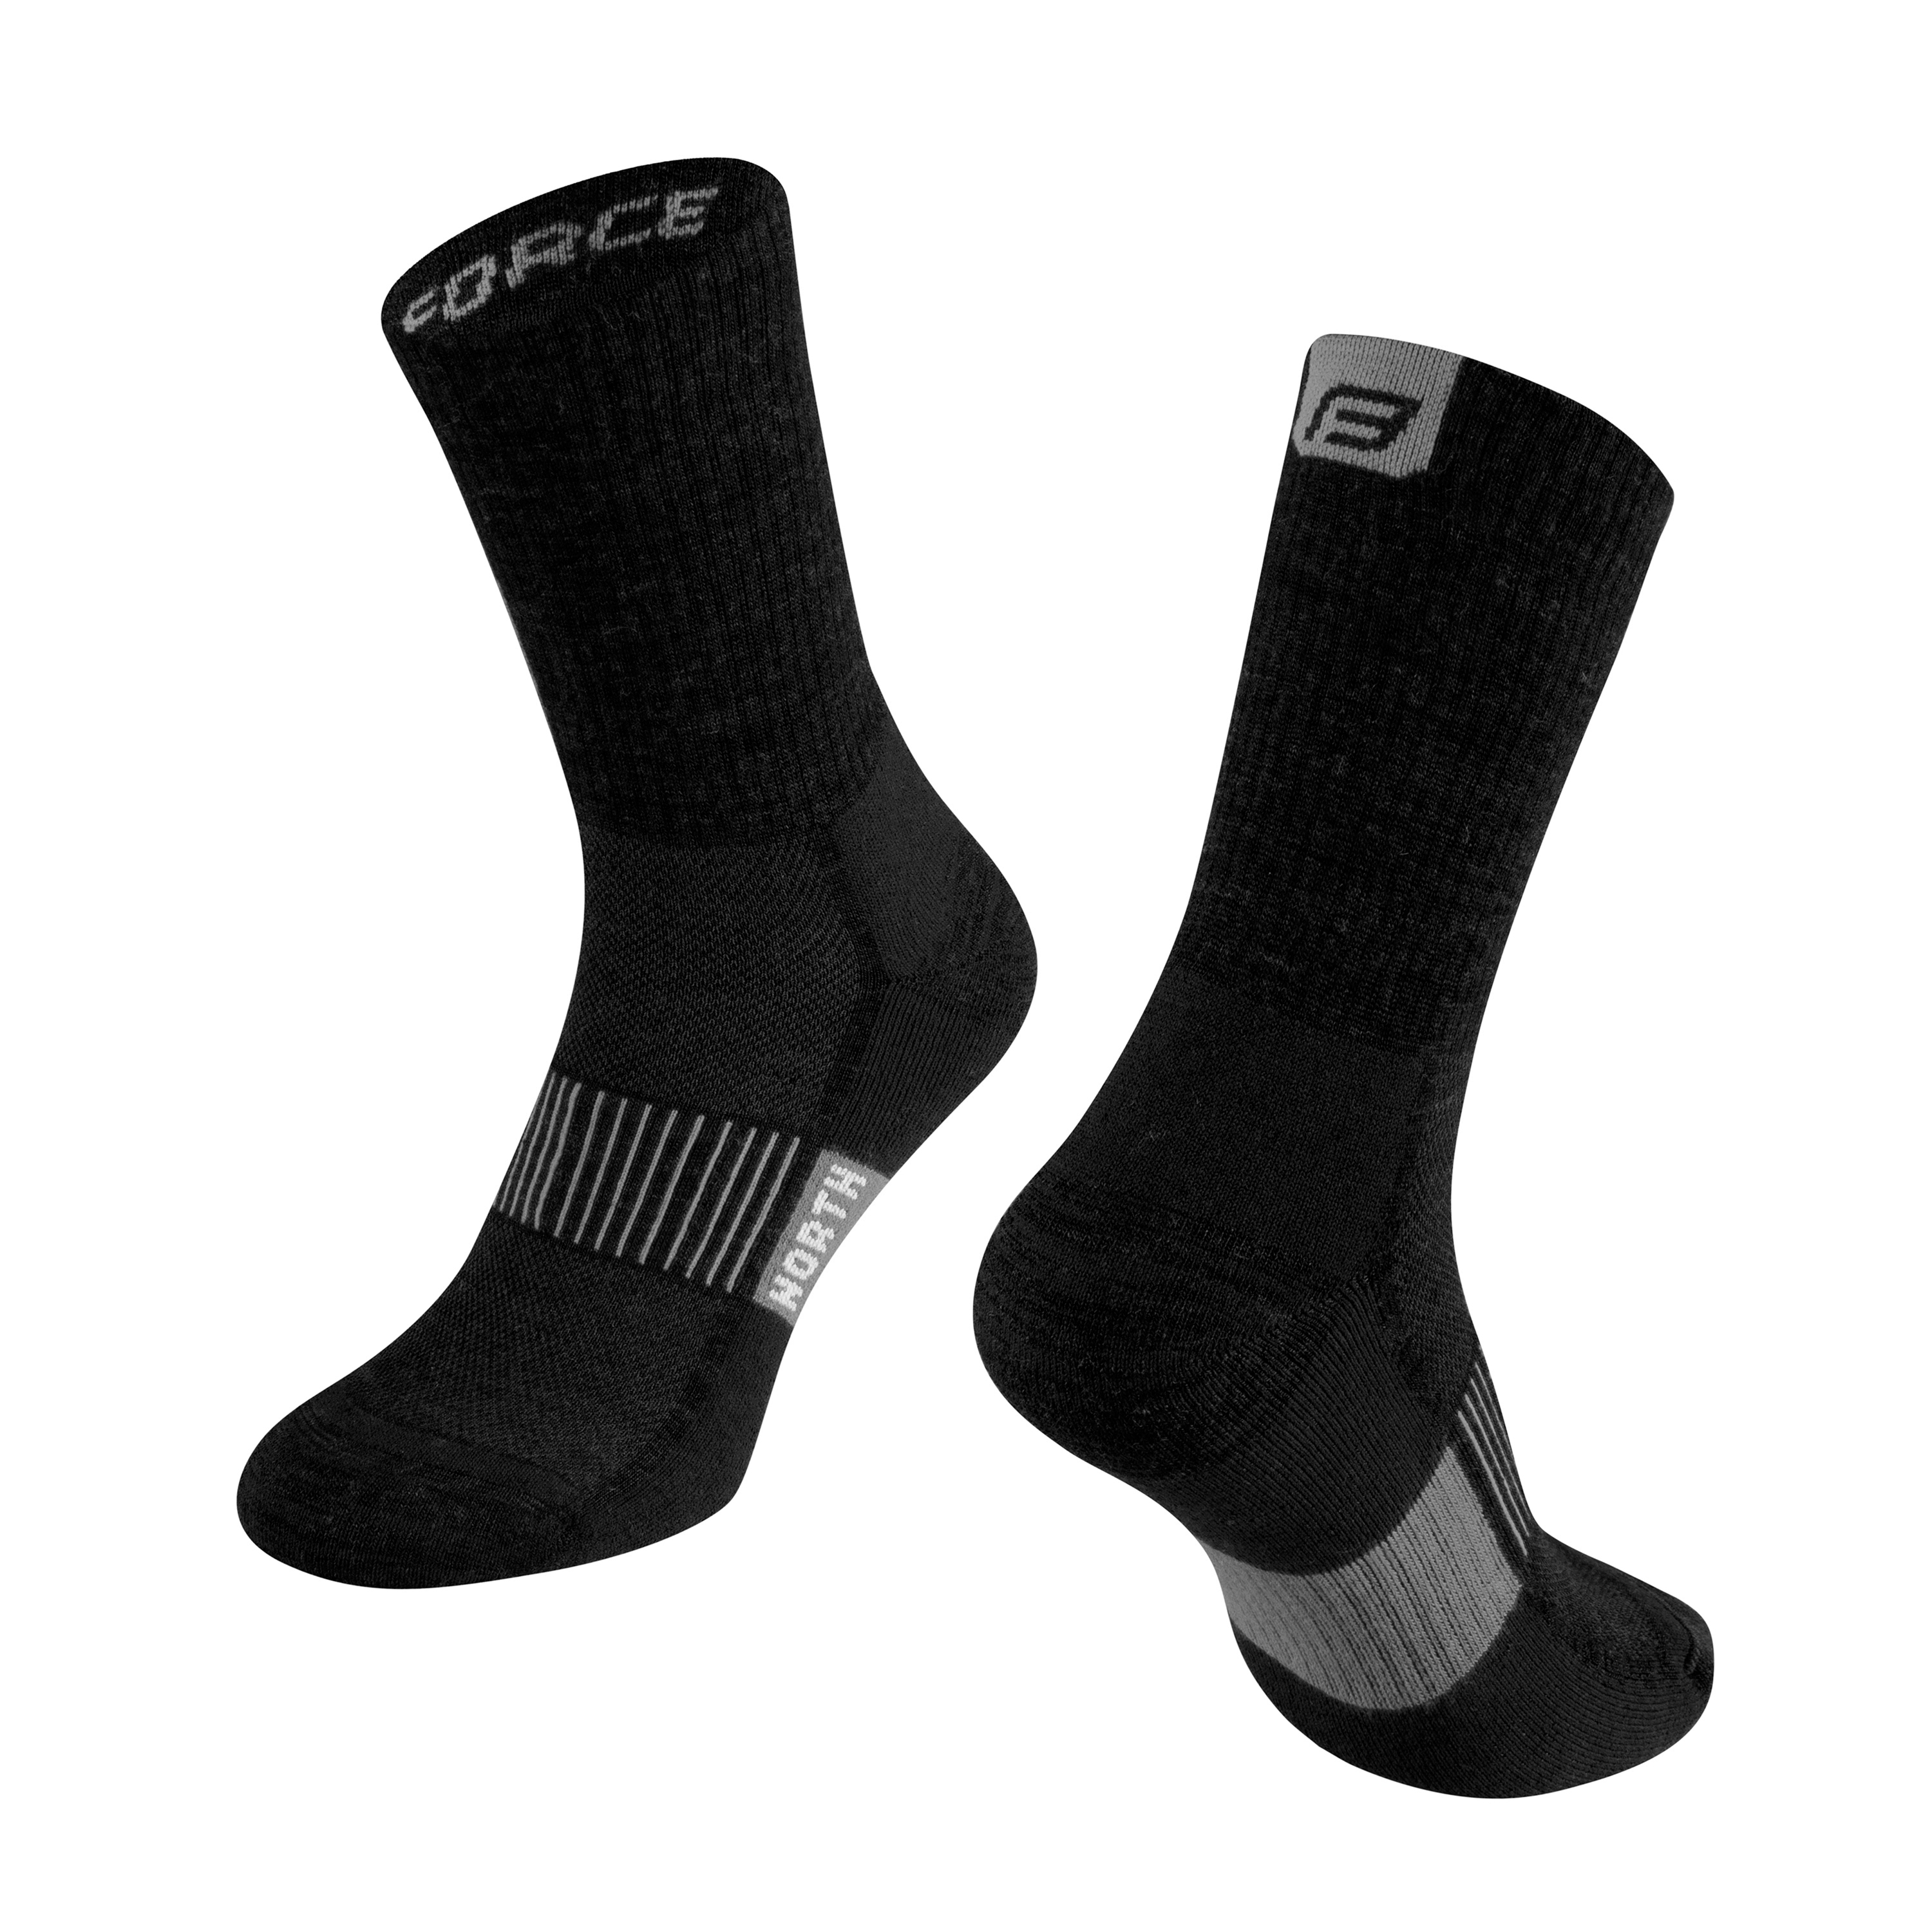 ponožky FORCE NORTH termo, černo-šedé S-M/36-41 Velikost: S-M